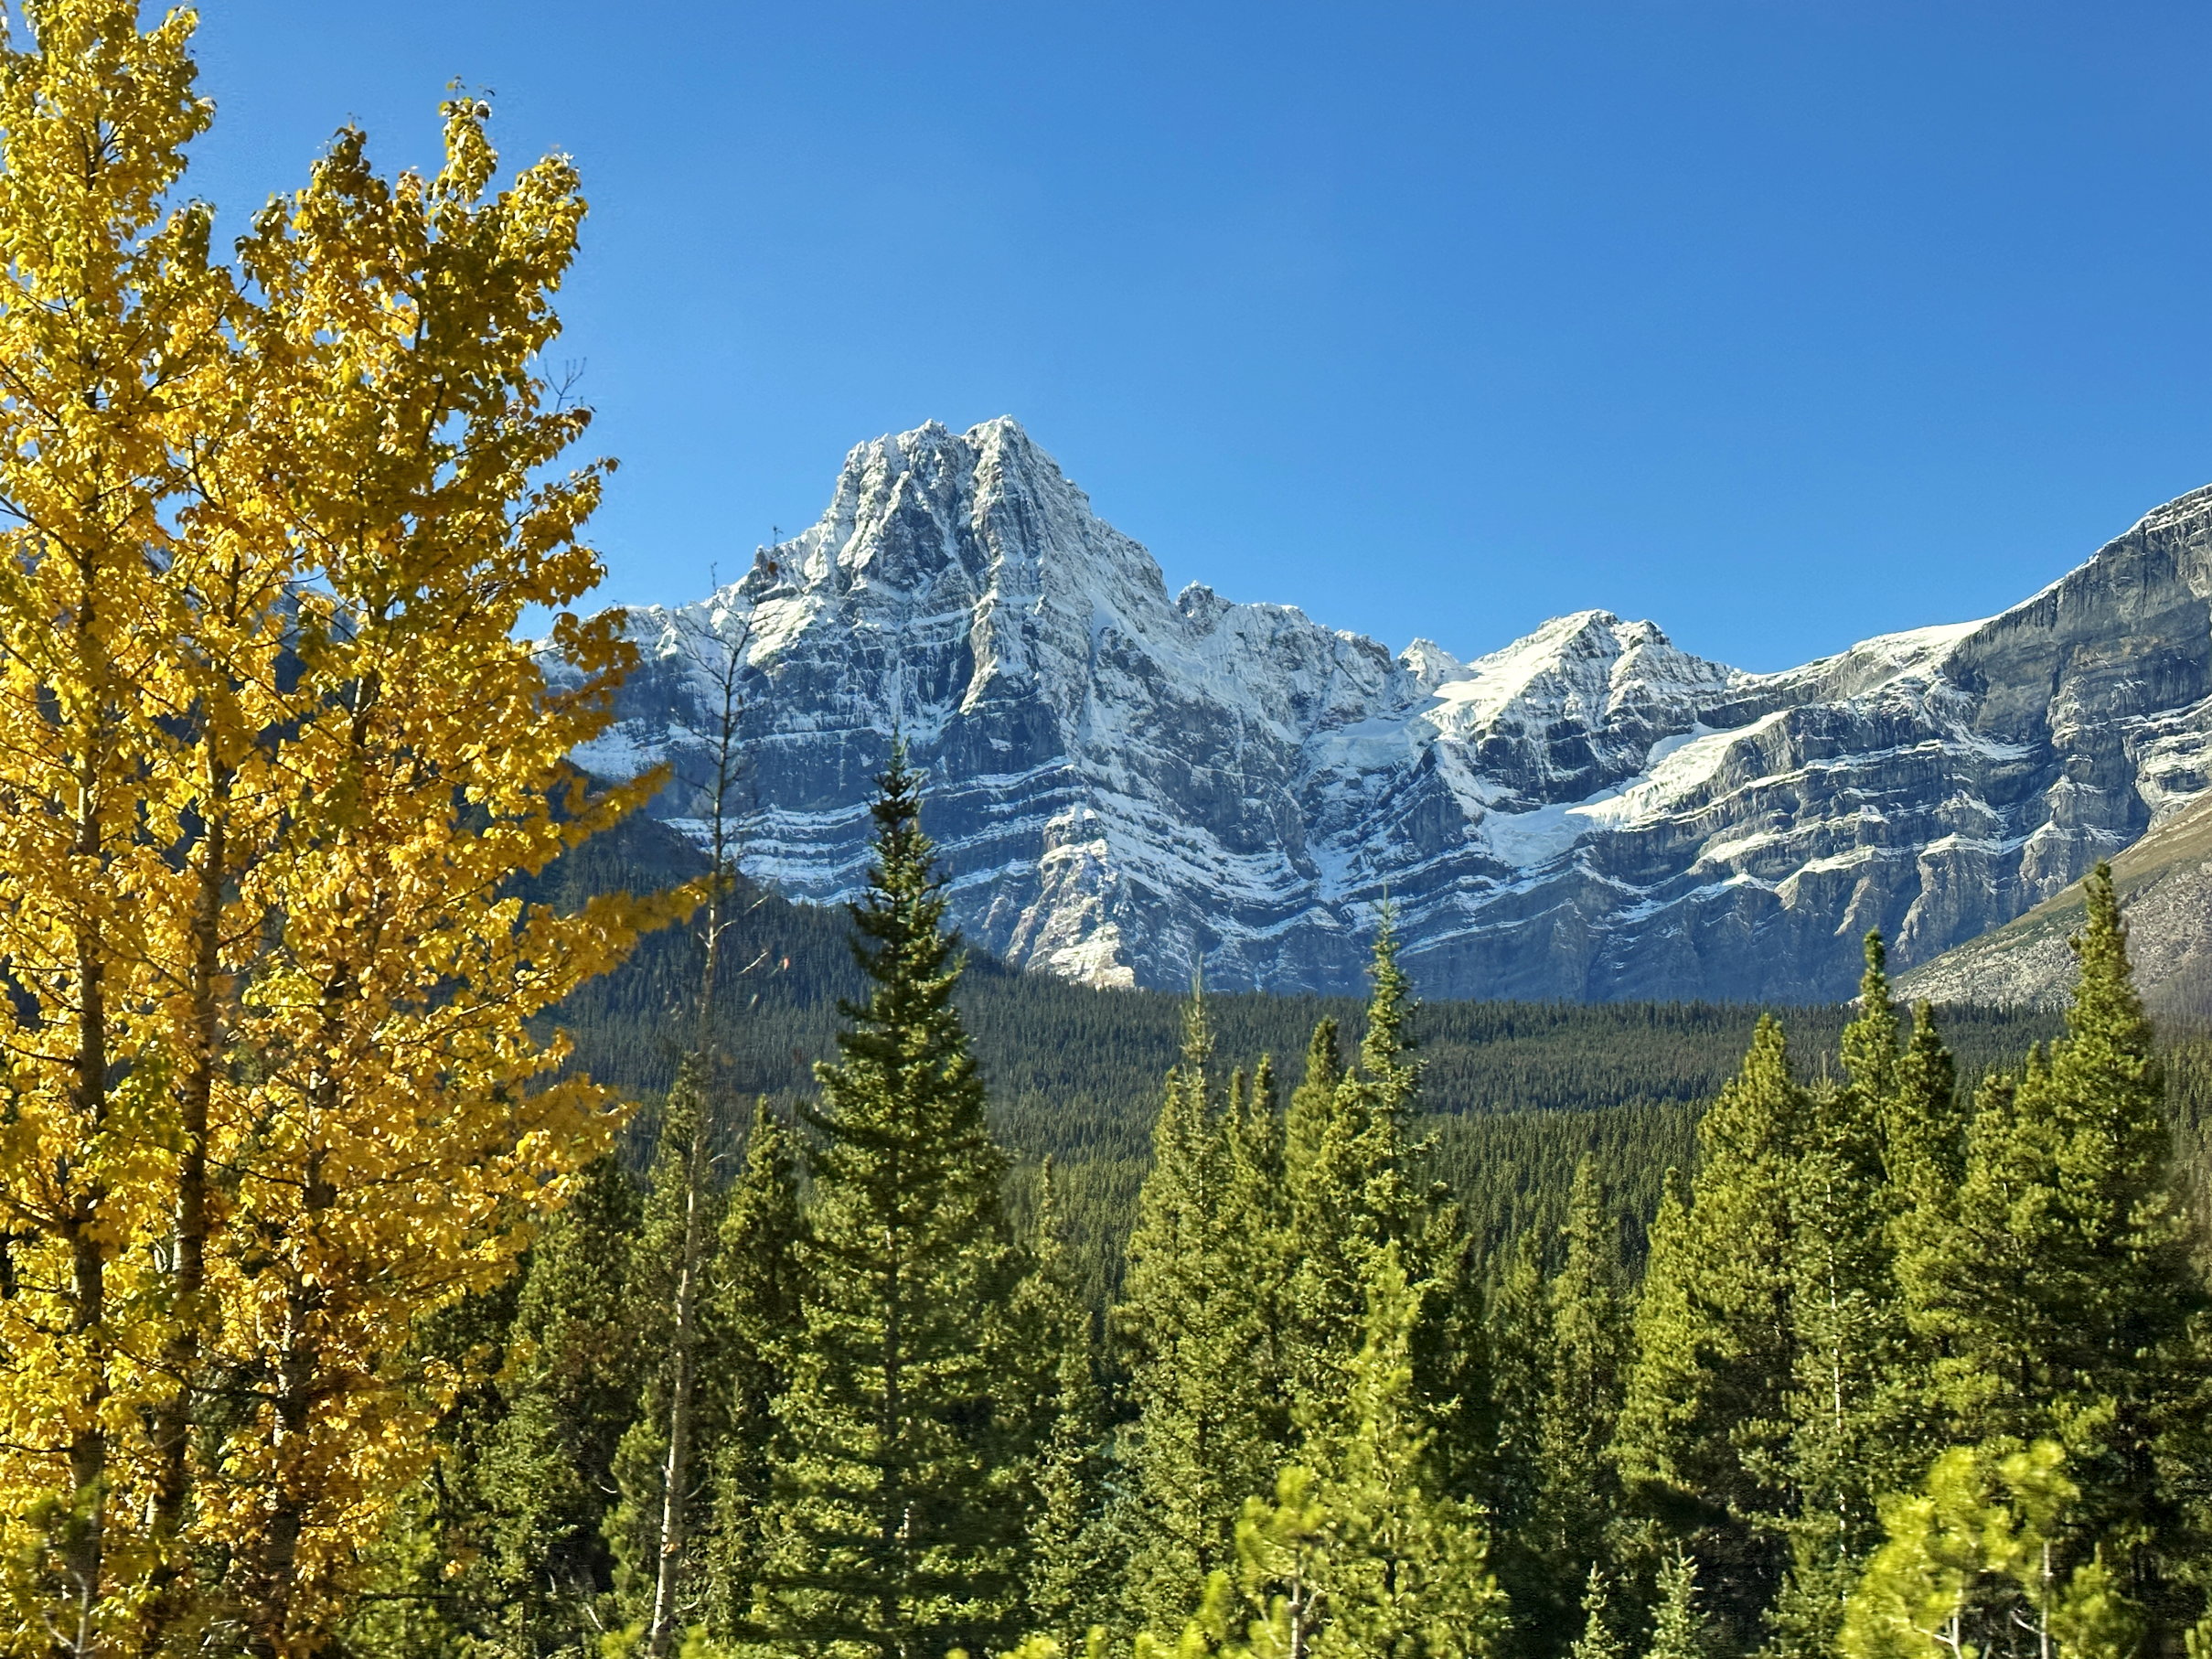 Der mächtige Berggipfel ragt über dem Wald, der Herbstfarben zeigt